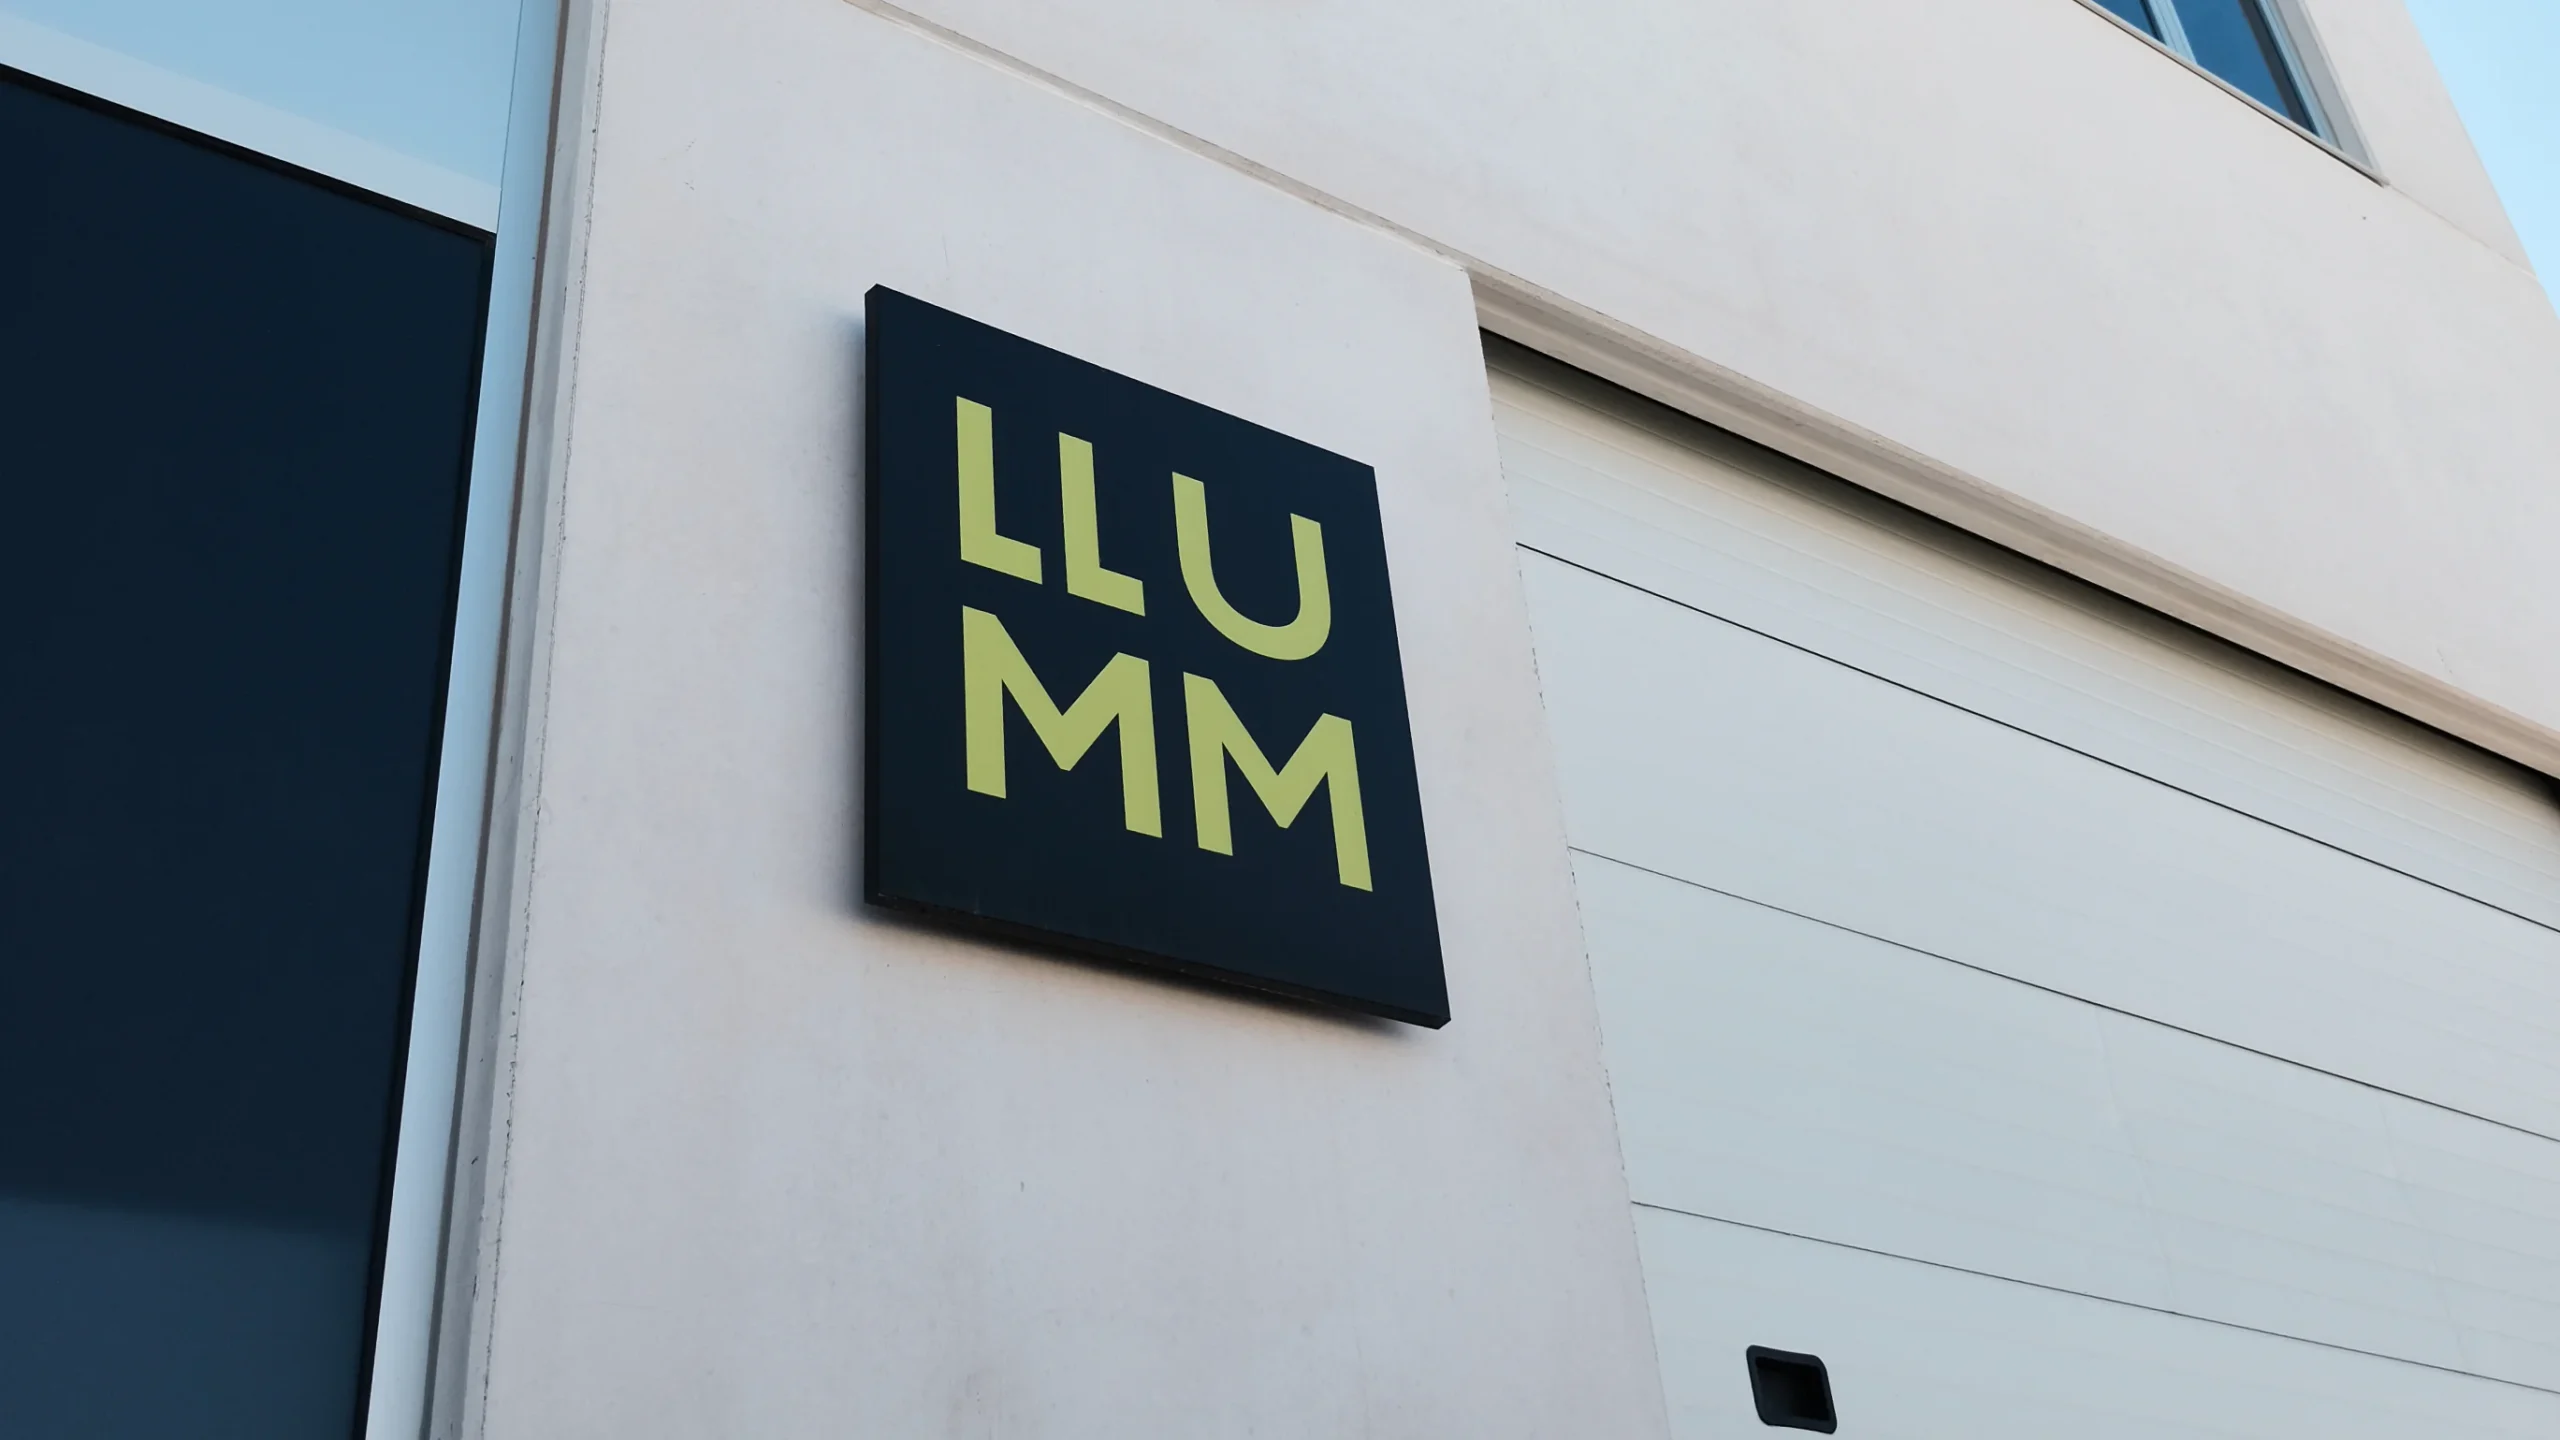 Imagen logo empresa Llumm Studios